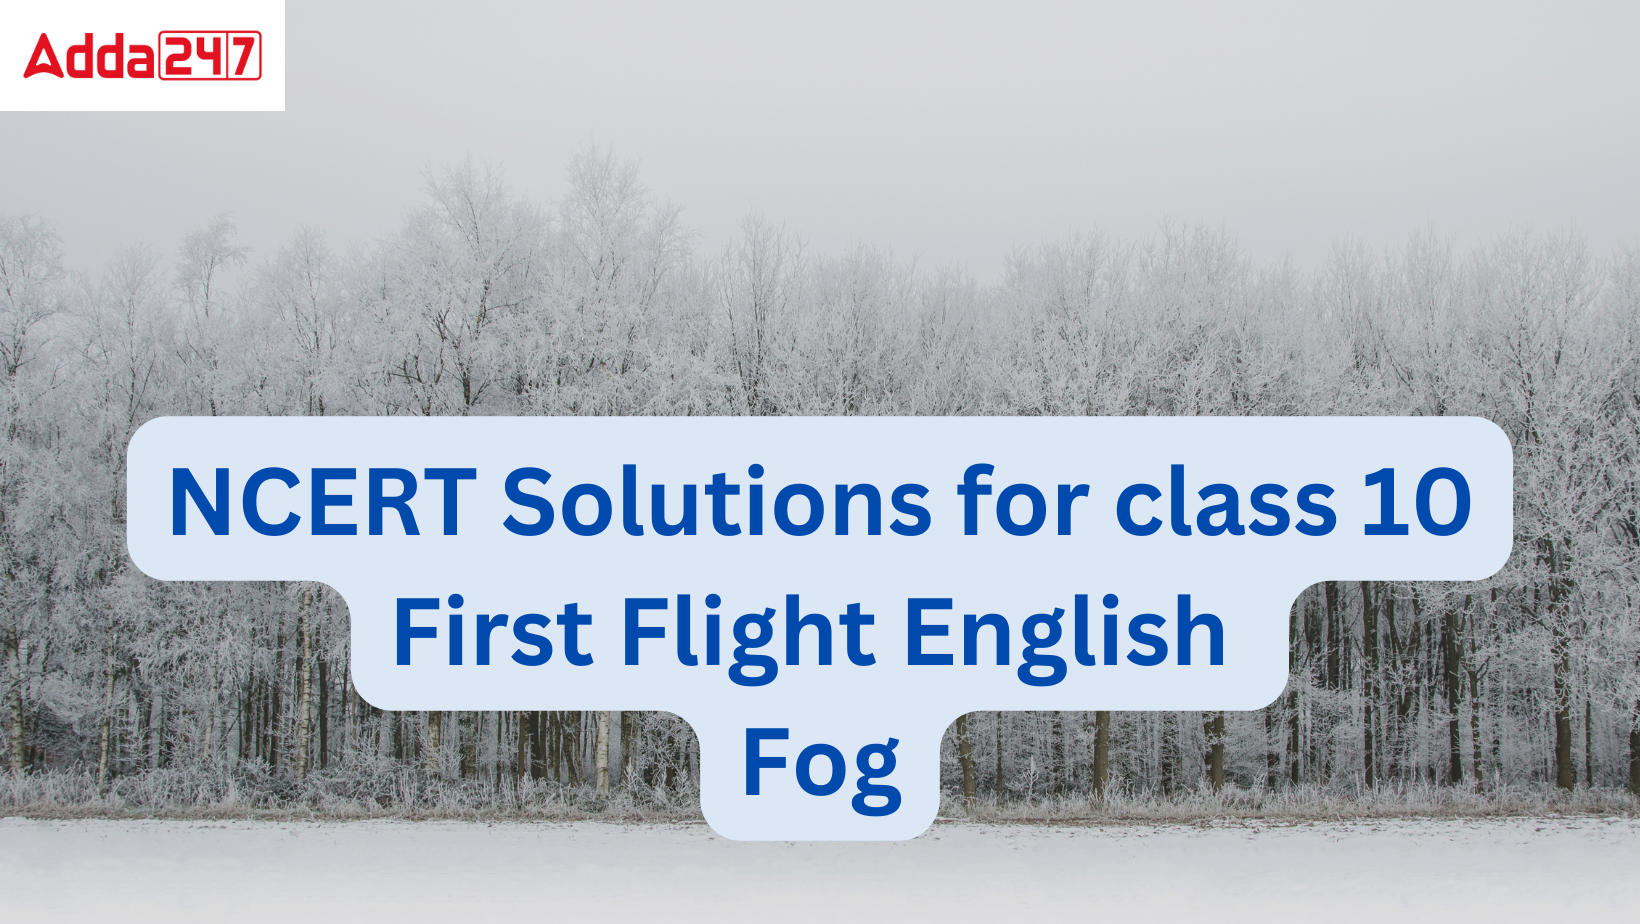 NCERT Solutions Fog